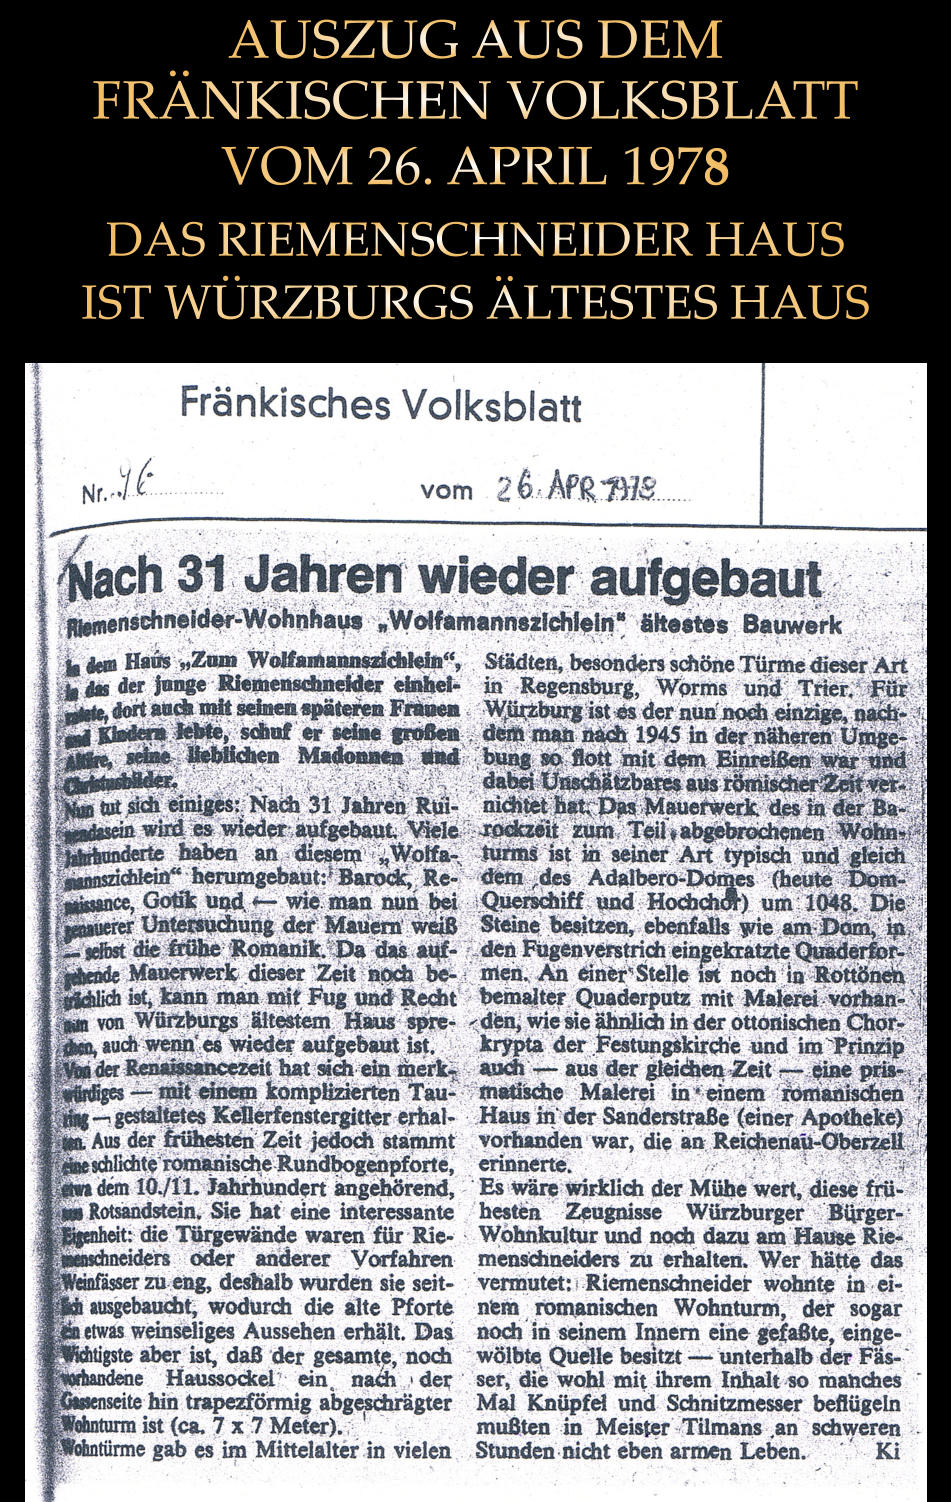 AUSZUG AUS DEM FRÄNKISCHEN VOLKSBLATT VOM 26. APRIL 1978 DAS RIEMENSCHNEIDER HAUS IST WÜRZBURGS ÄLTESTES HAUS